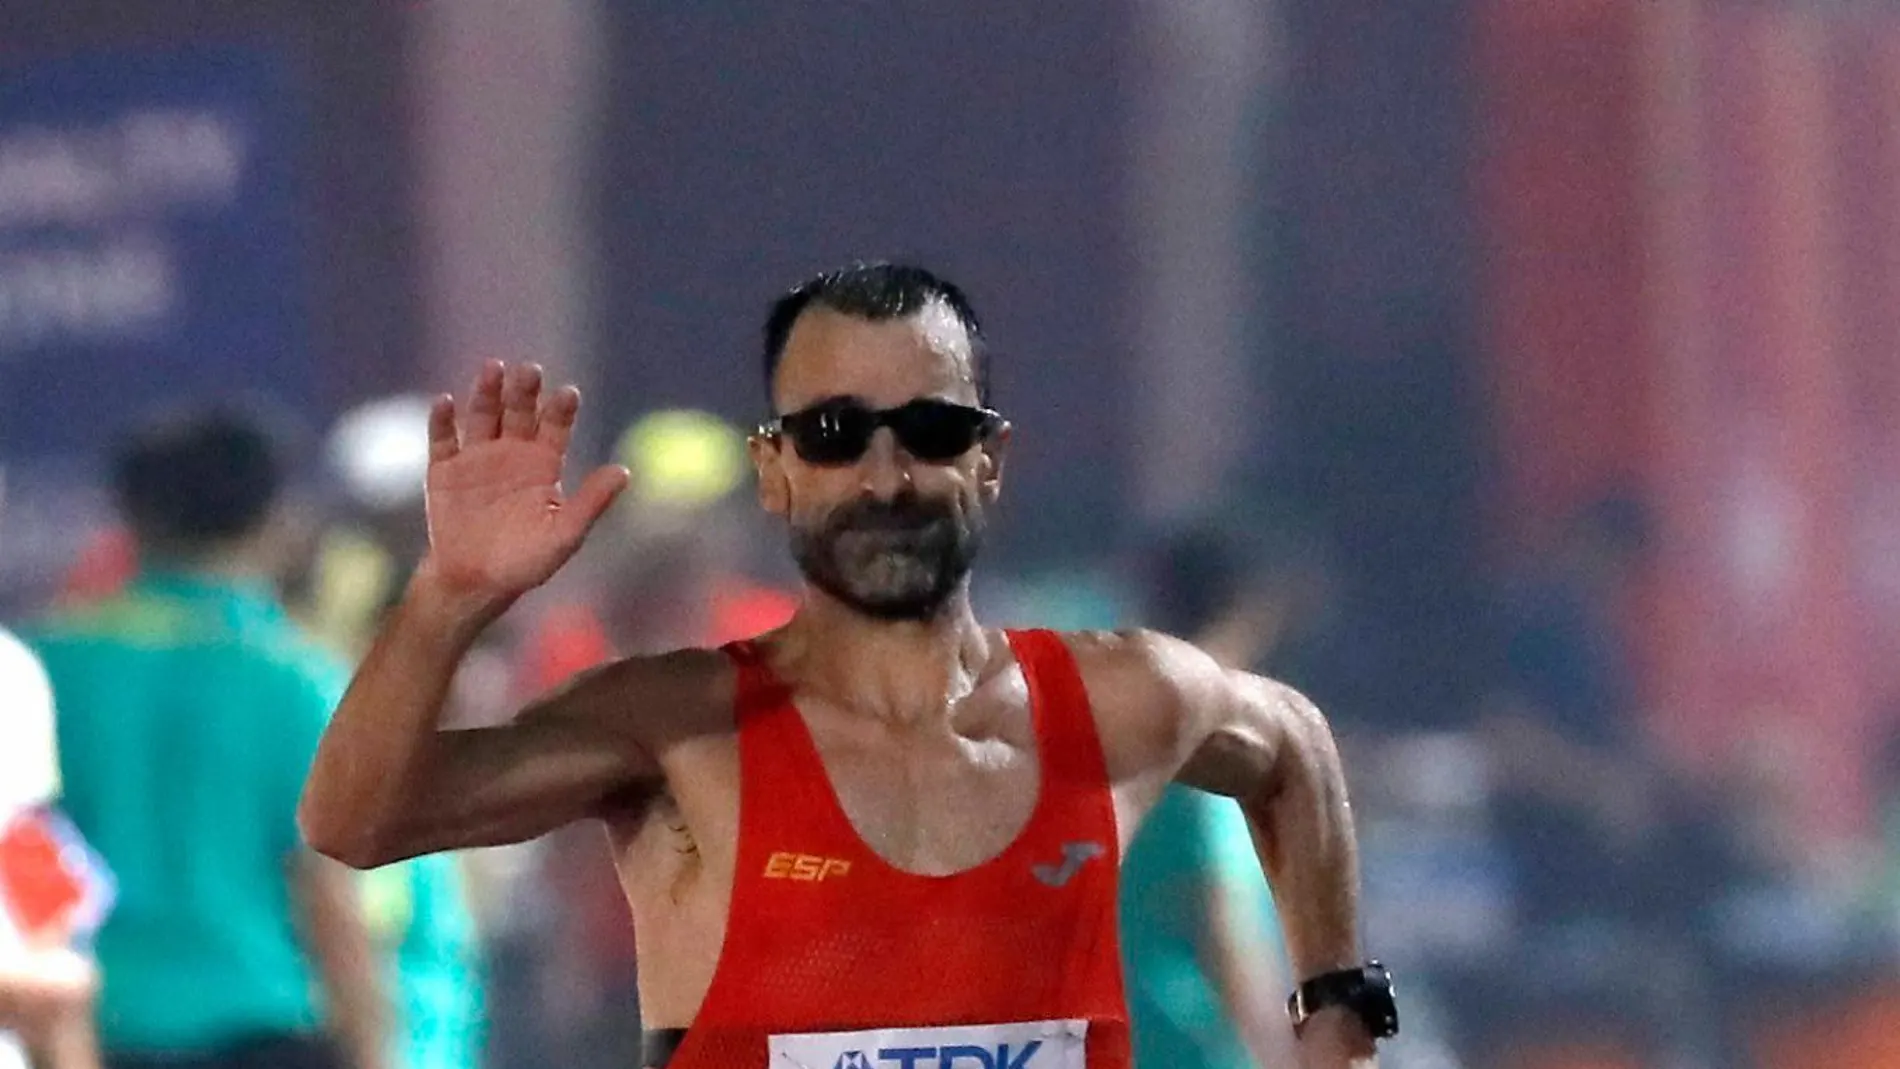 Bragado llega a la meta de la prueba de marcha de 50 km en el Mundial de Atletismo IAAF Doha 2019 | EFE